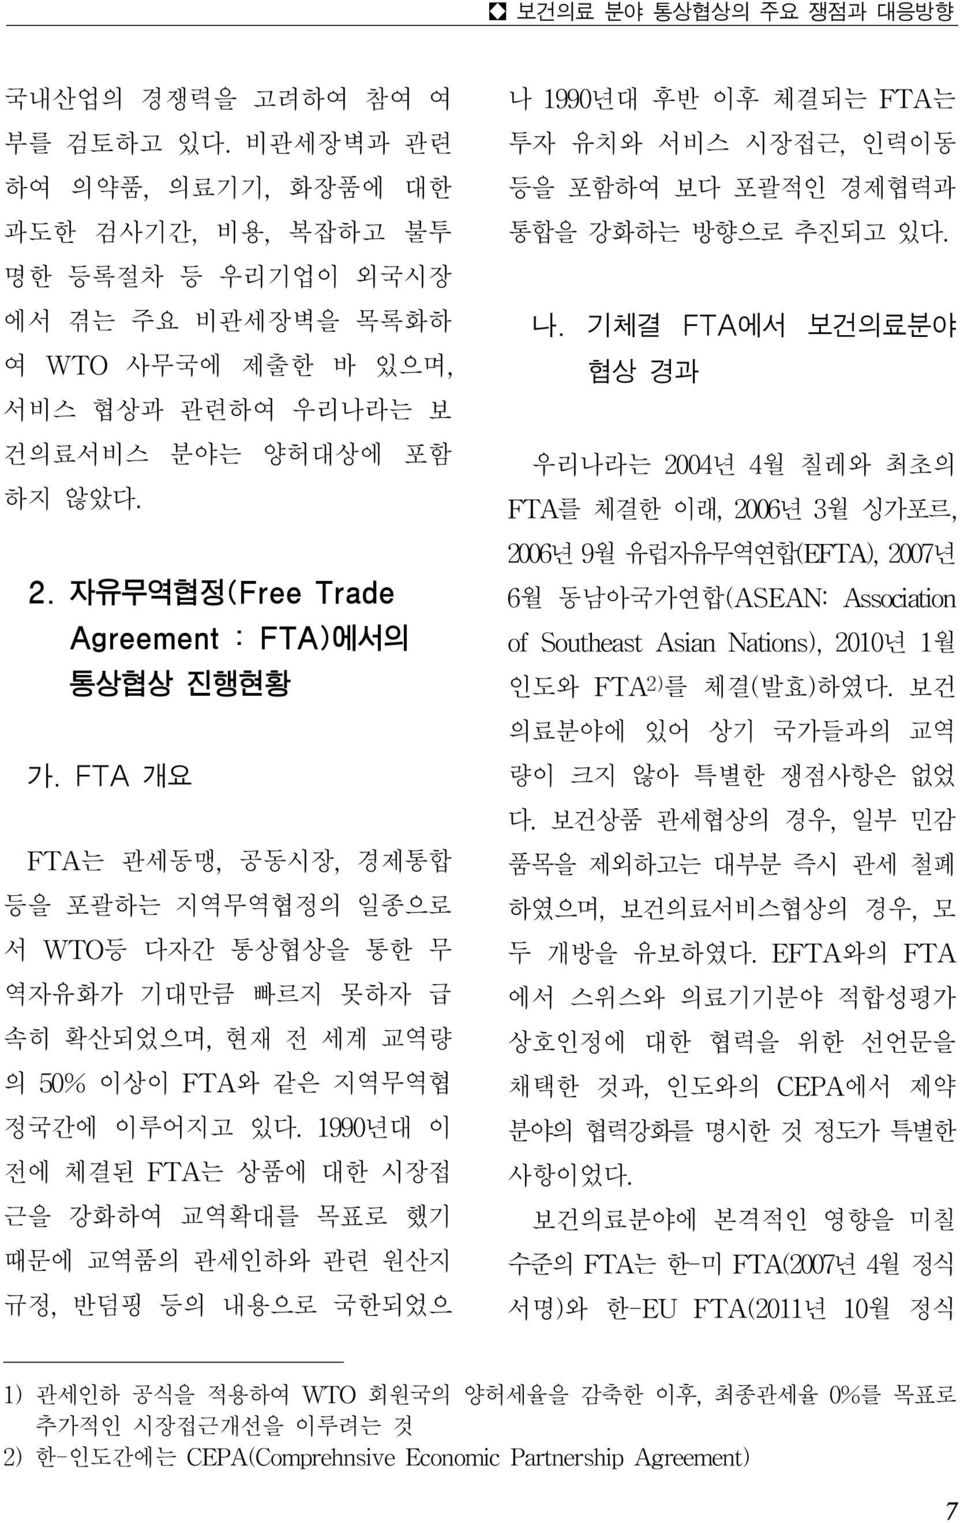 자유무역협정(Free Trade Agreement : FTA)에서의 통상협상 진행현황 가.